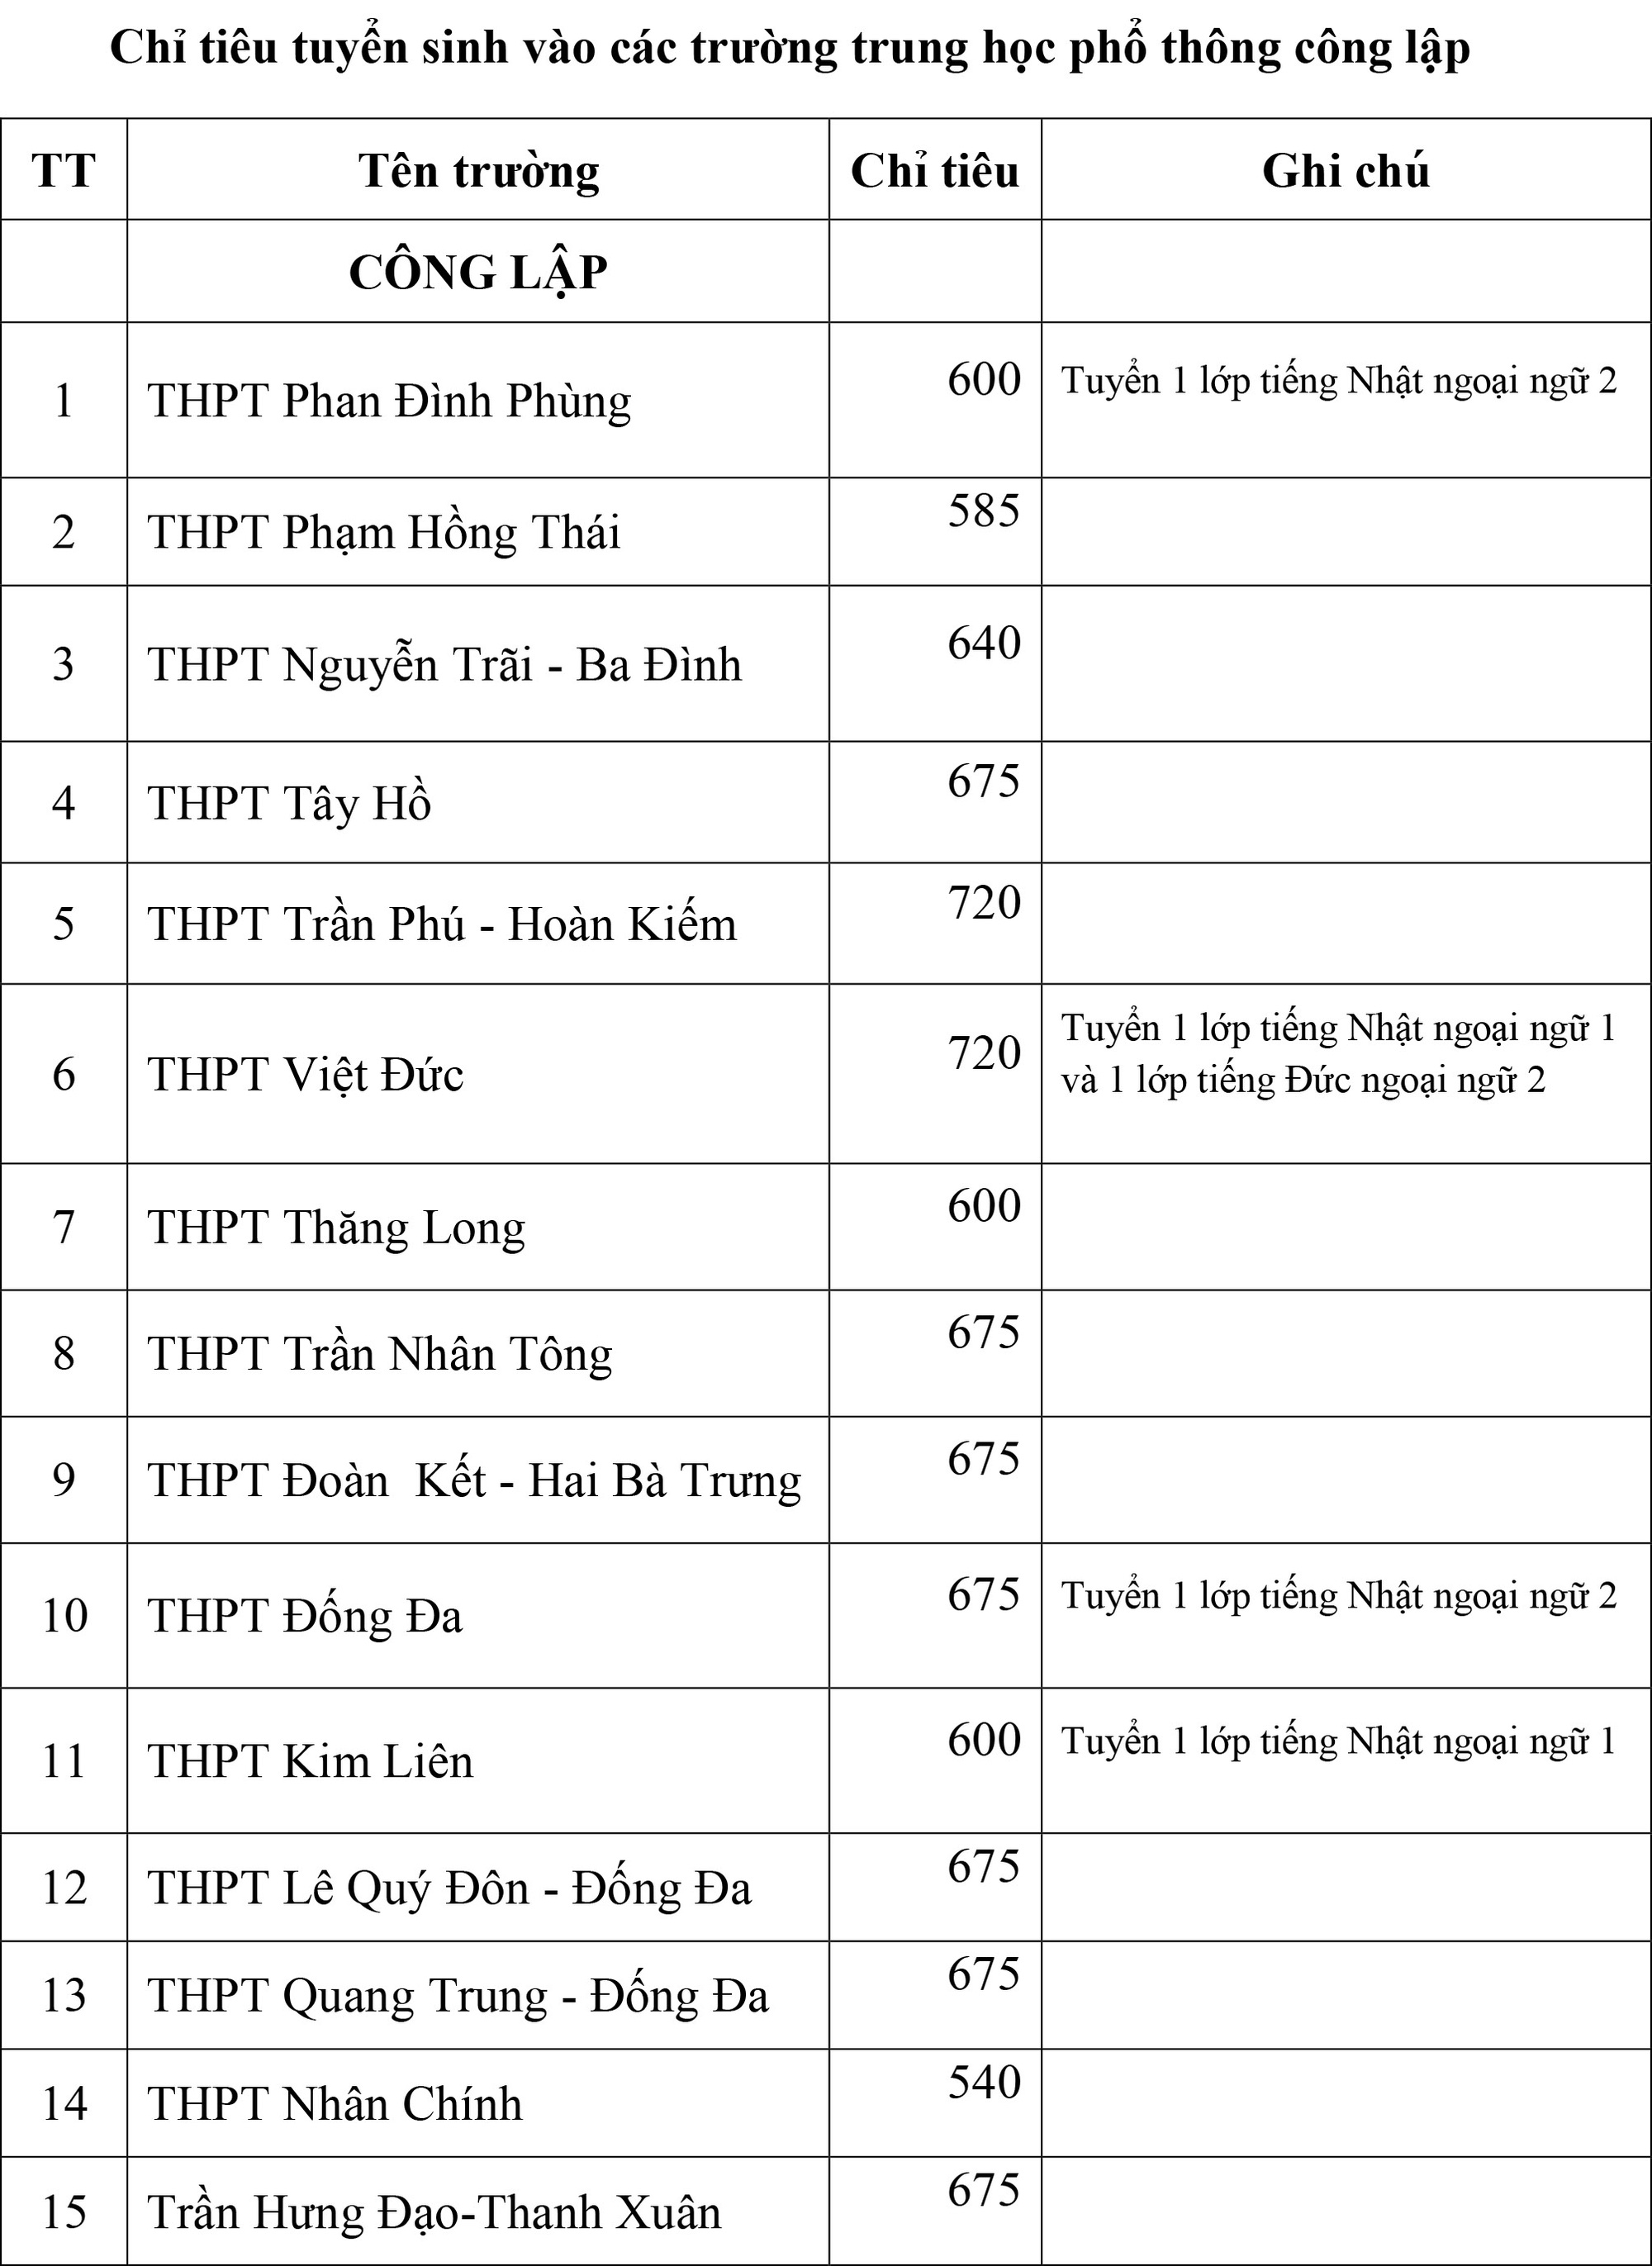 Thông tin mới nhất về chỉ tiêu tuyển sinh của các trường THPT chuyên tại Hà Nội, phụ huynh cân nhắc nộp hồ sơ cho con - Ảnh 2.